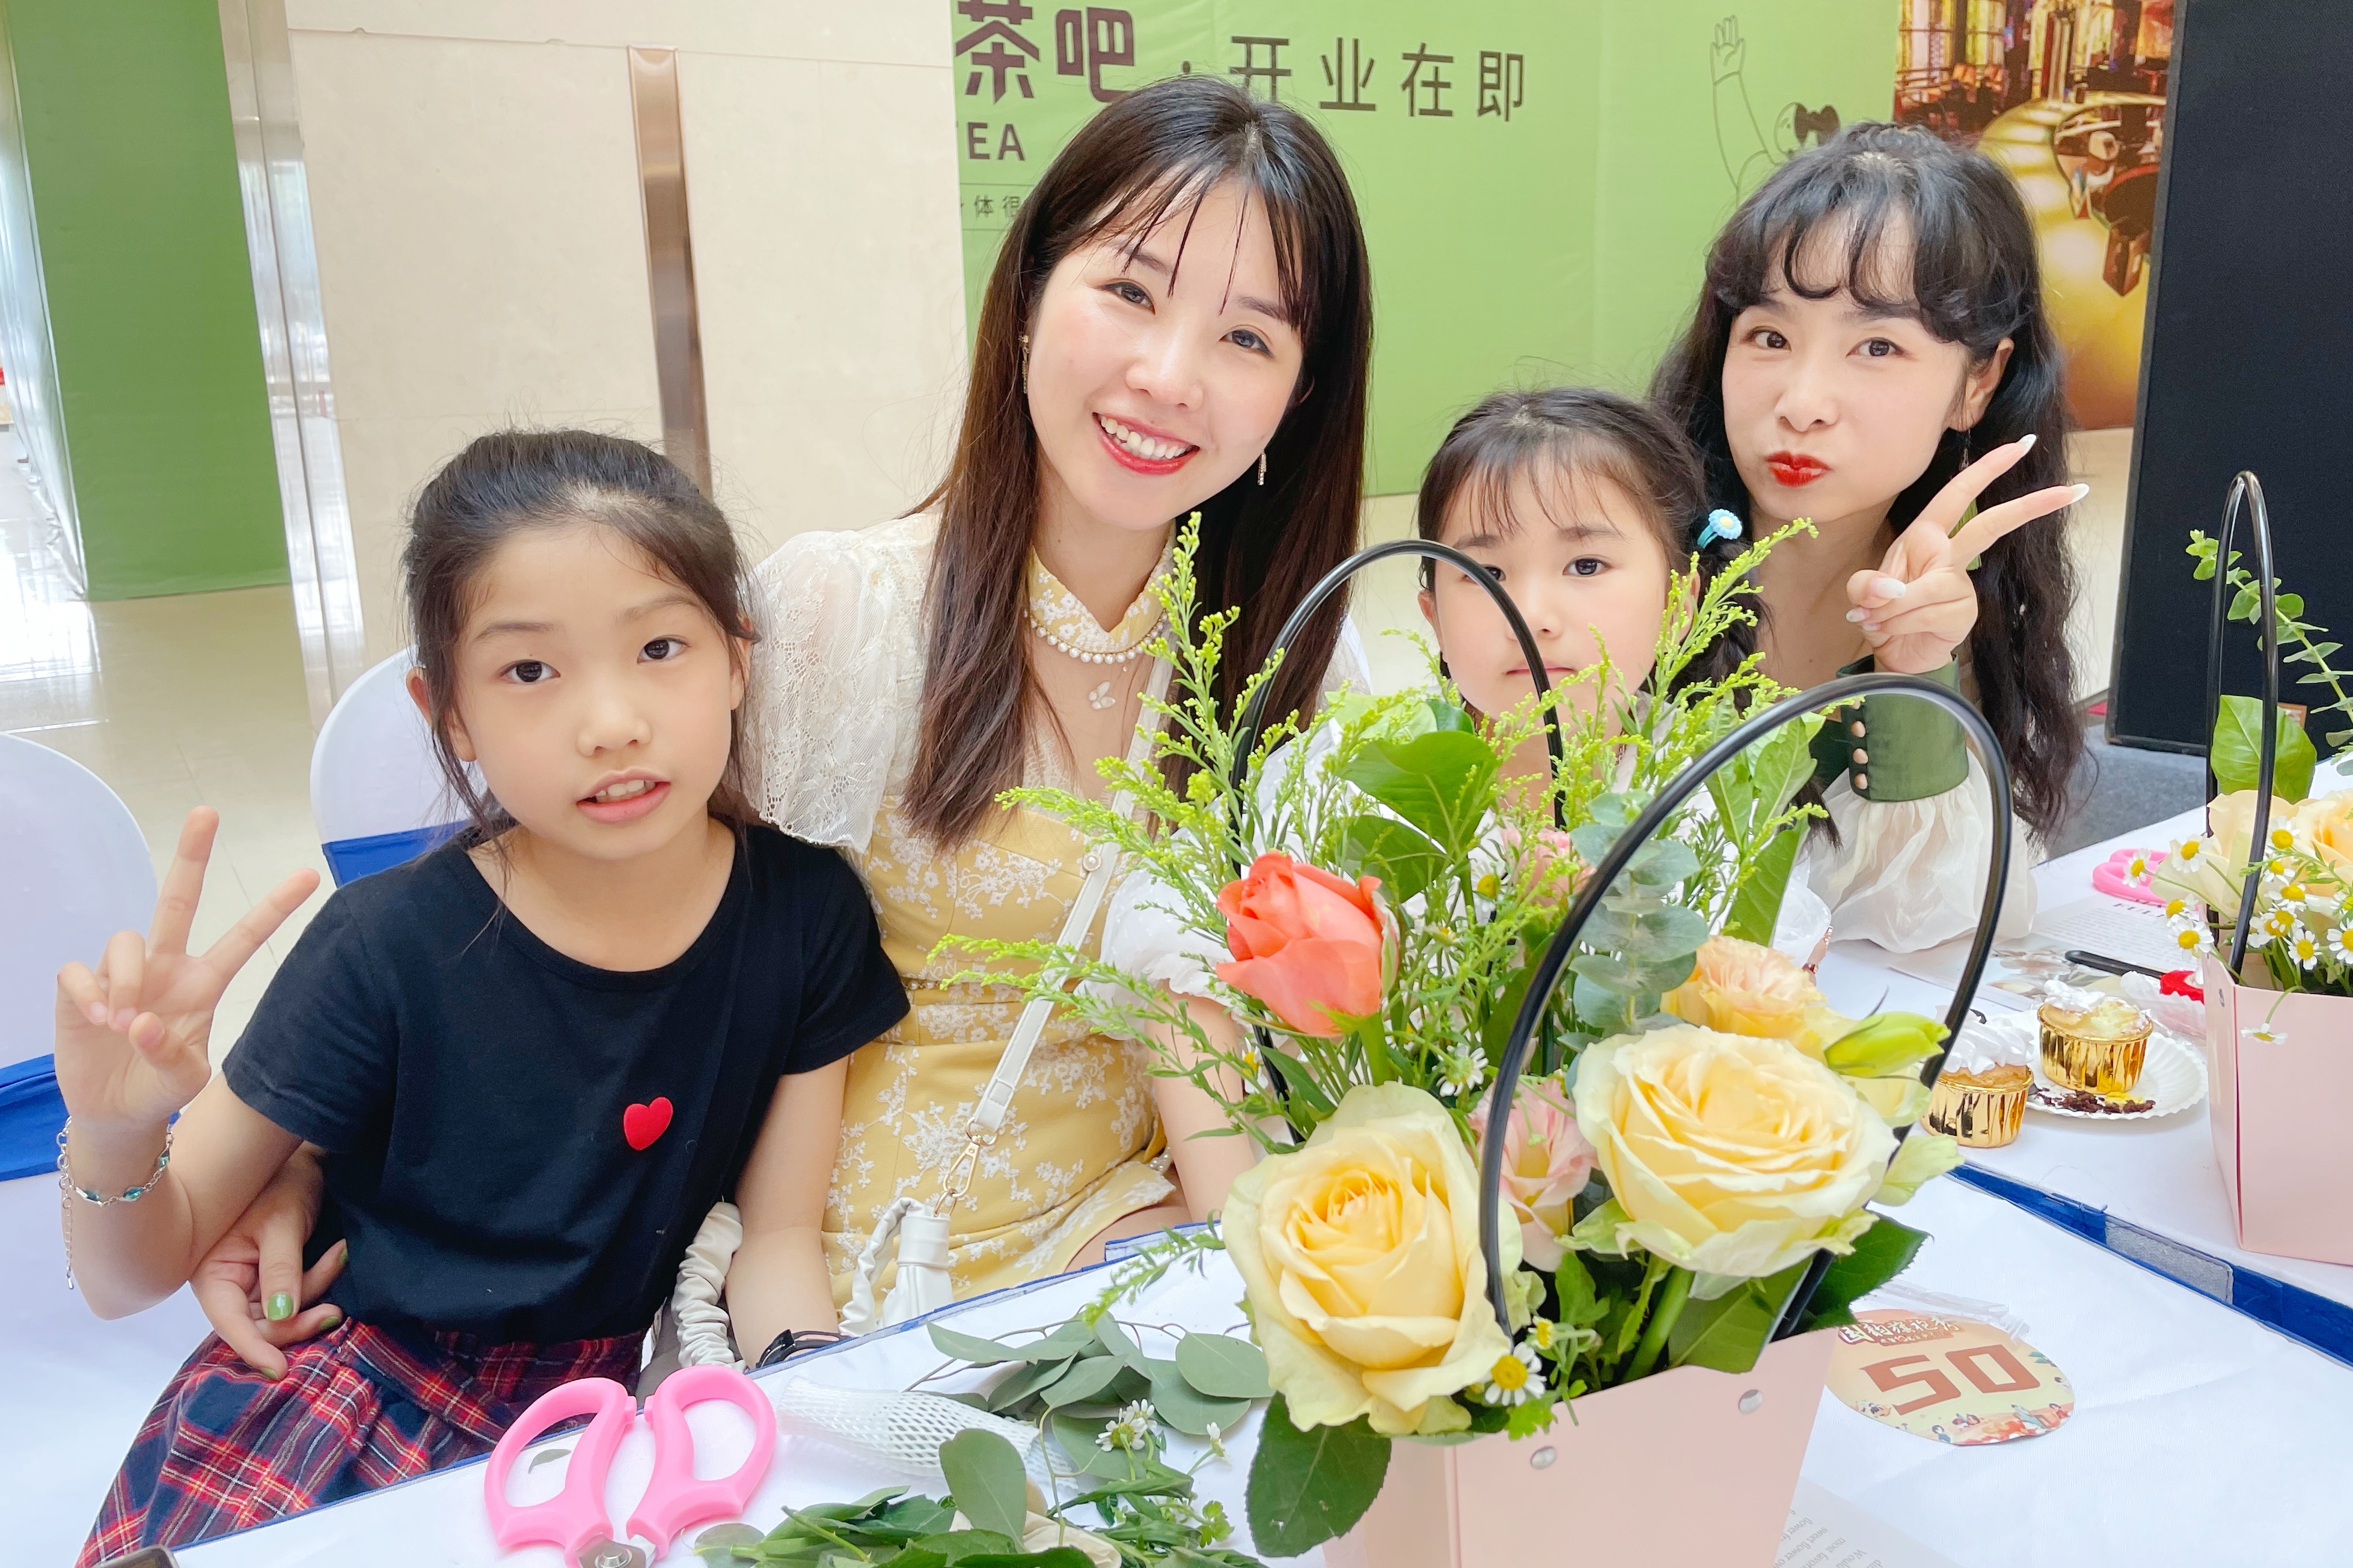 5月9日15时，世纪金源购物中心举办了一场融合国韵秀、旗袍展、插花体验的母亲节专场沙龙，献礼母亲。